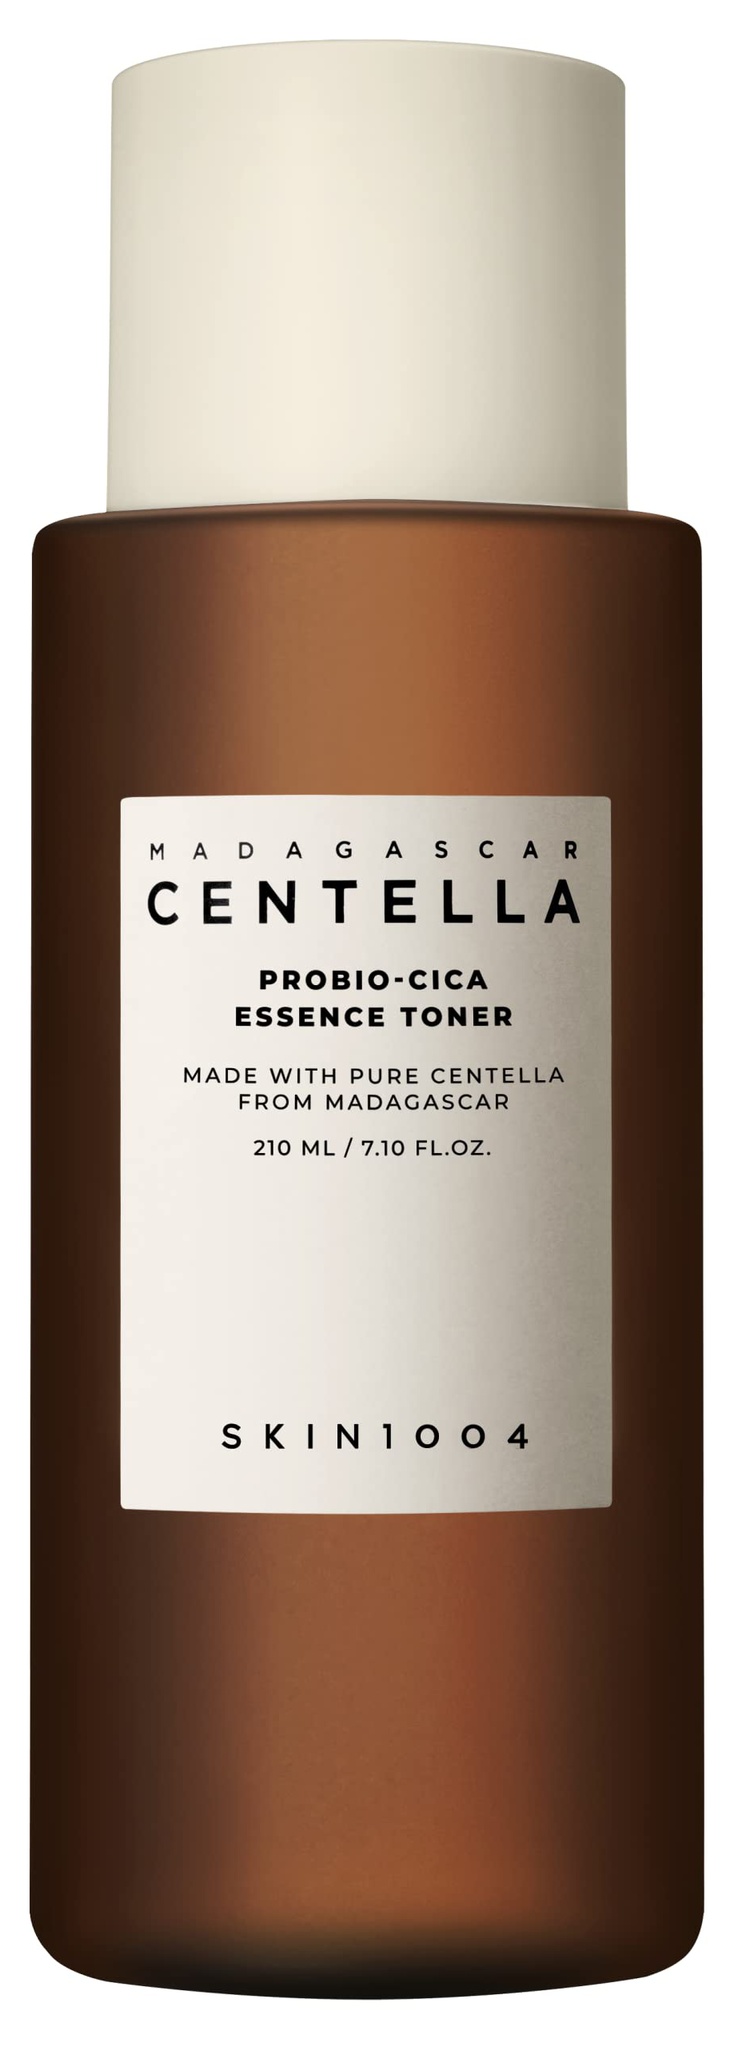 Skin1004 Madagascar Centella Probio-cica Essence Toner